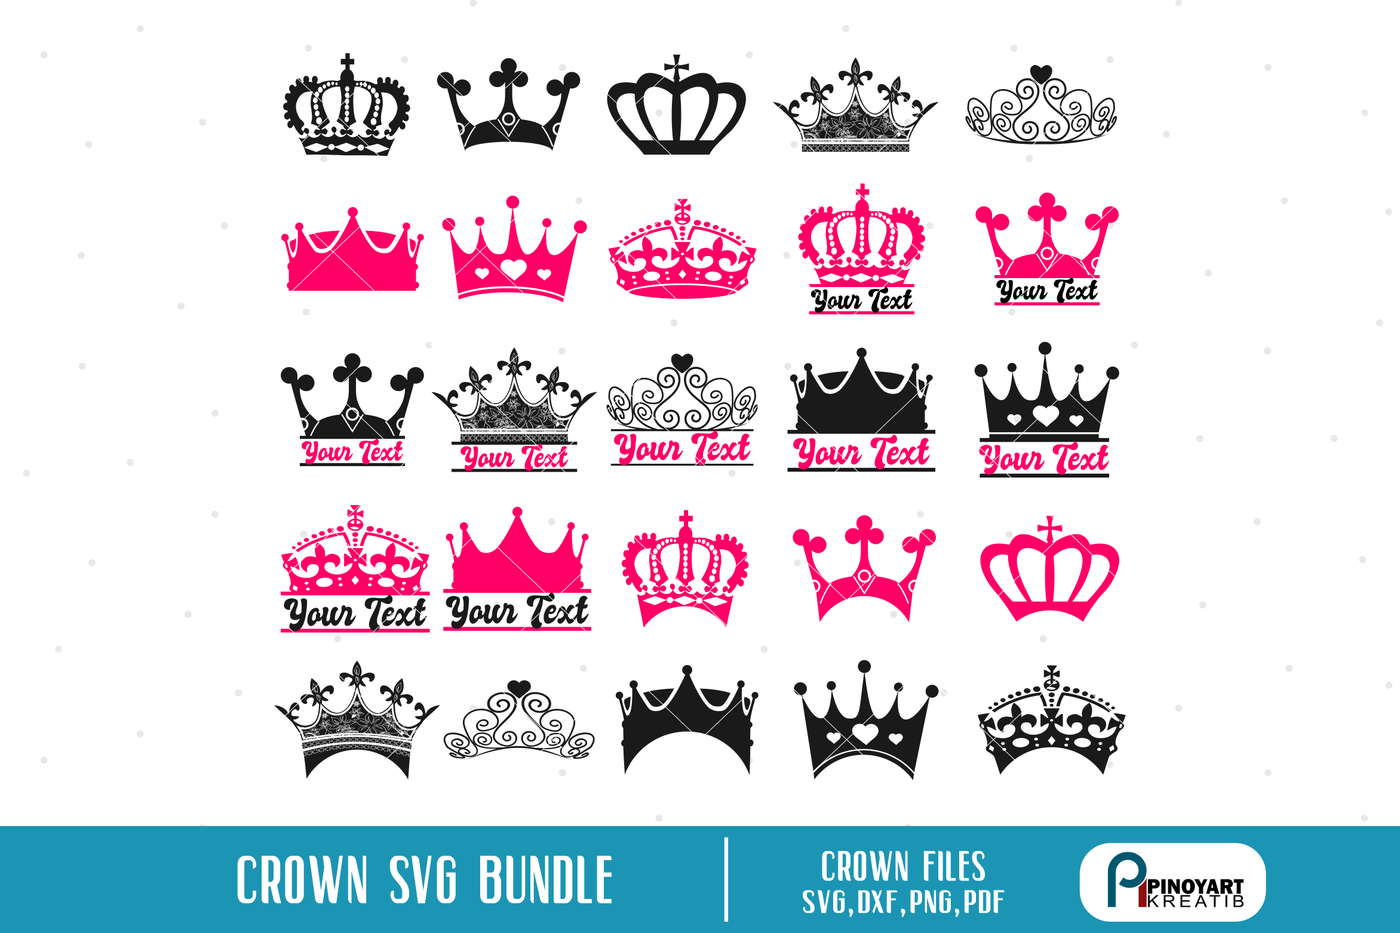 Crown svg,crown dxf,crown png,crown pdf,crown vector,crown